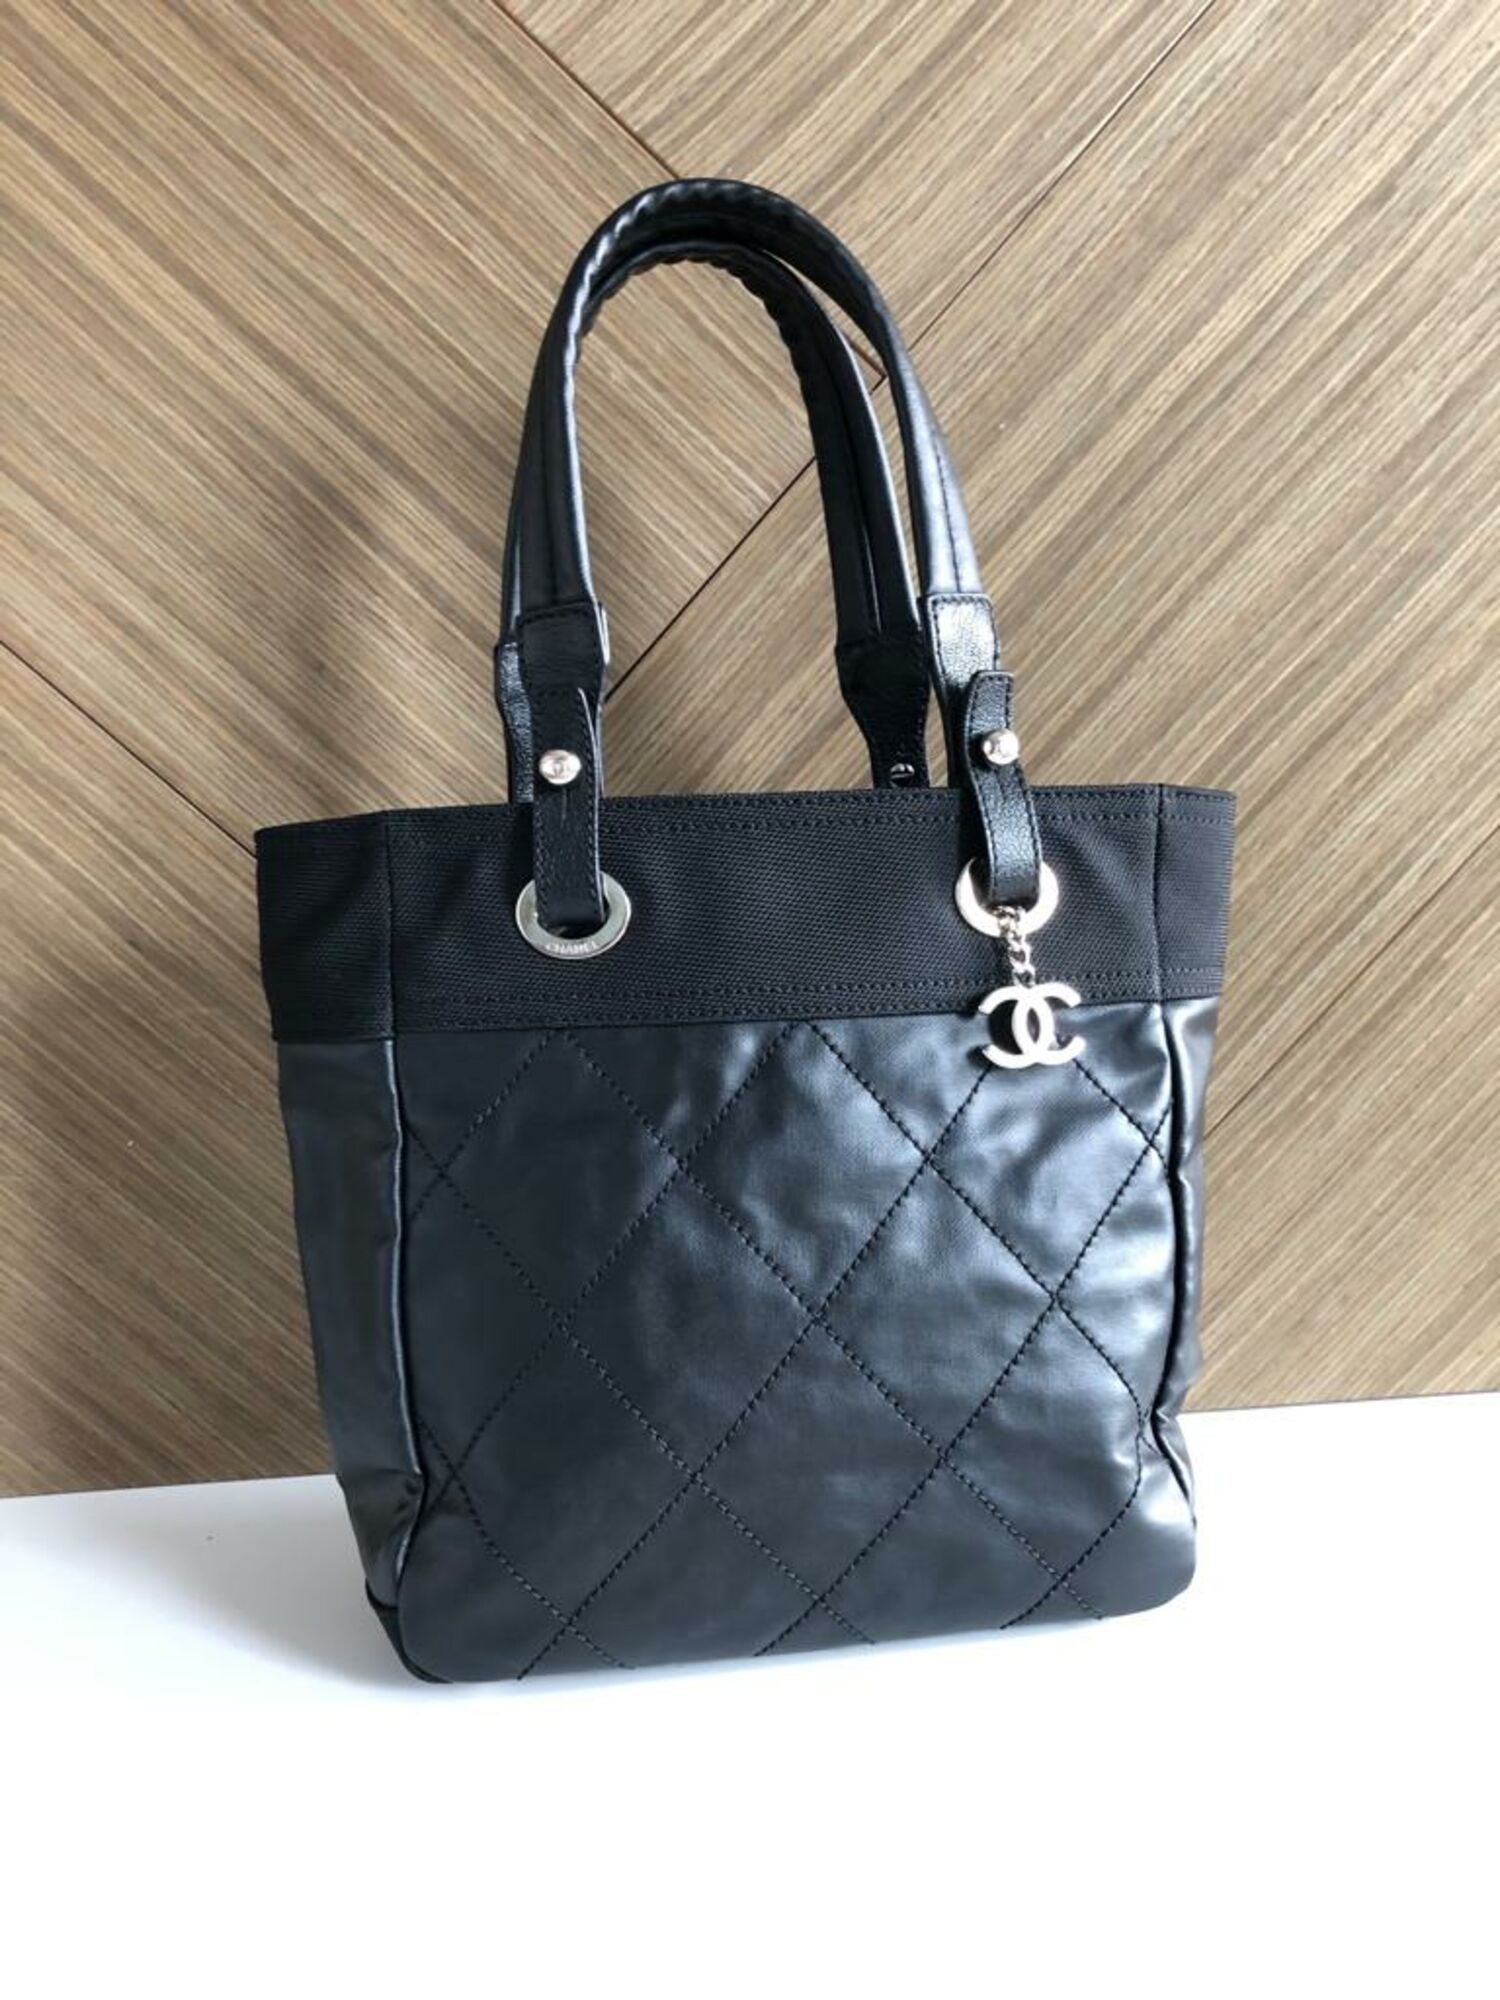 chanel black canvas tote handbag